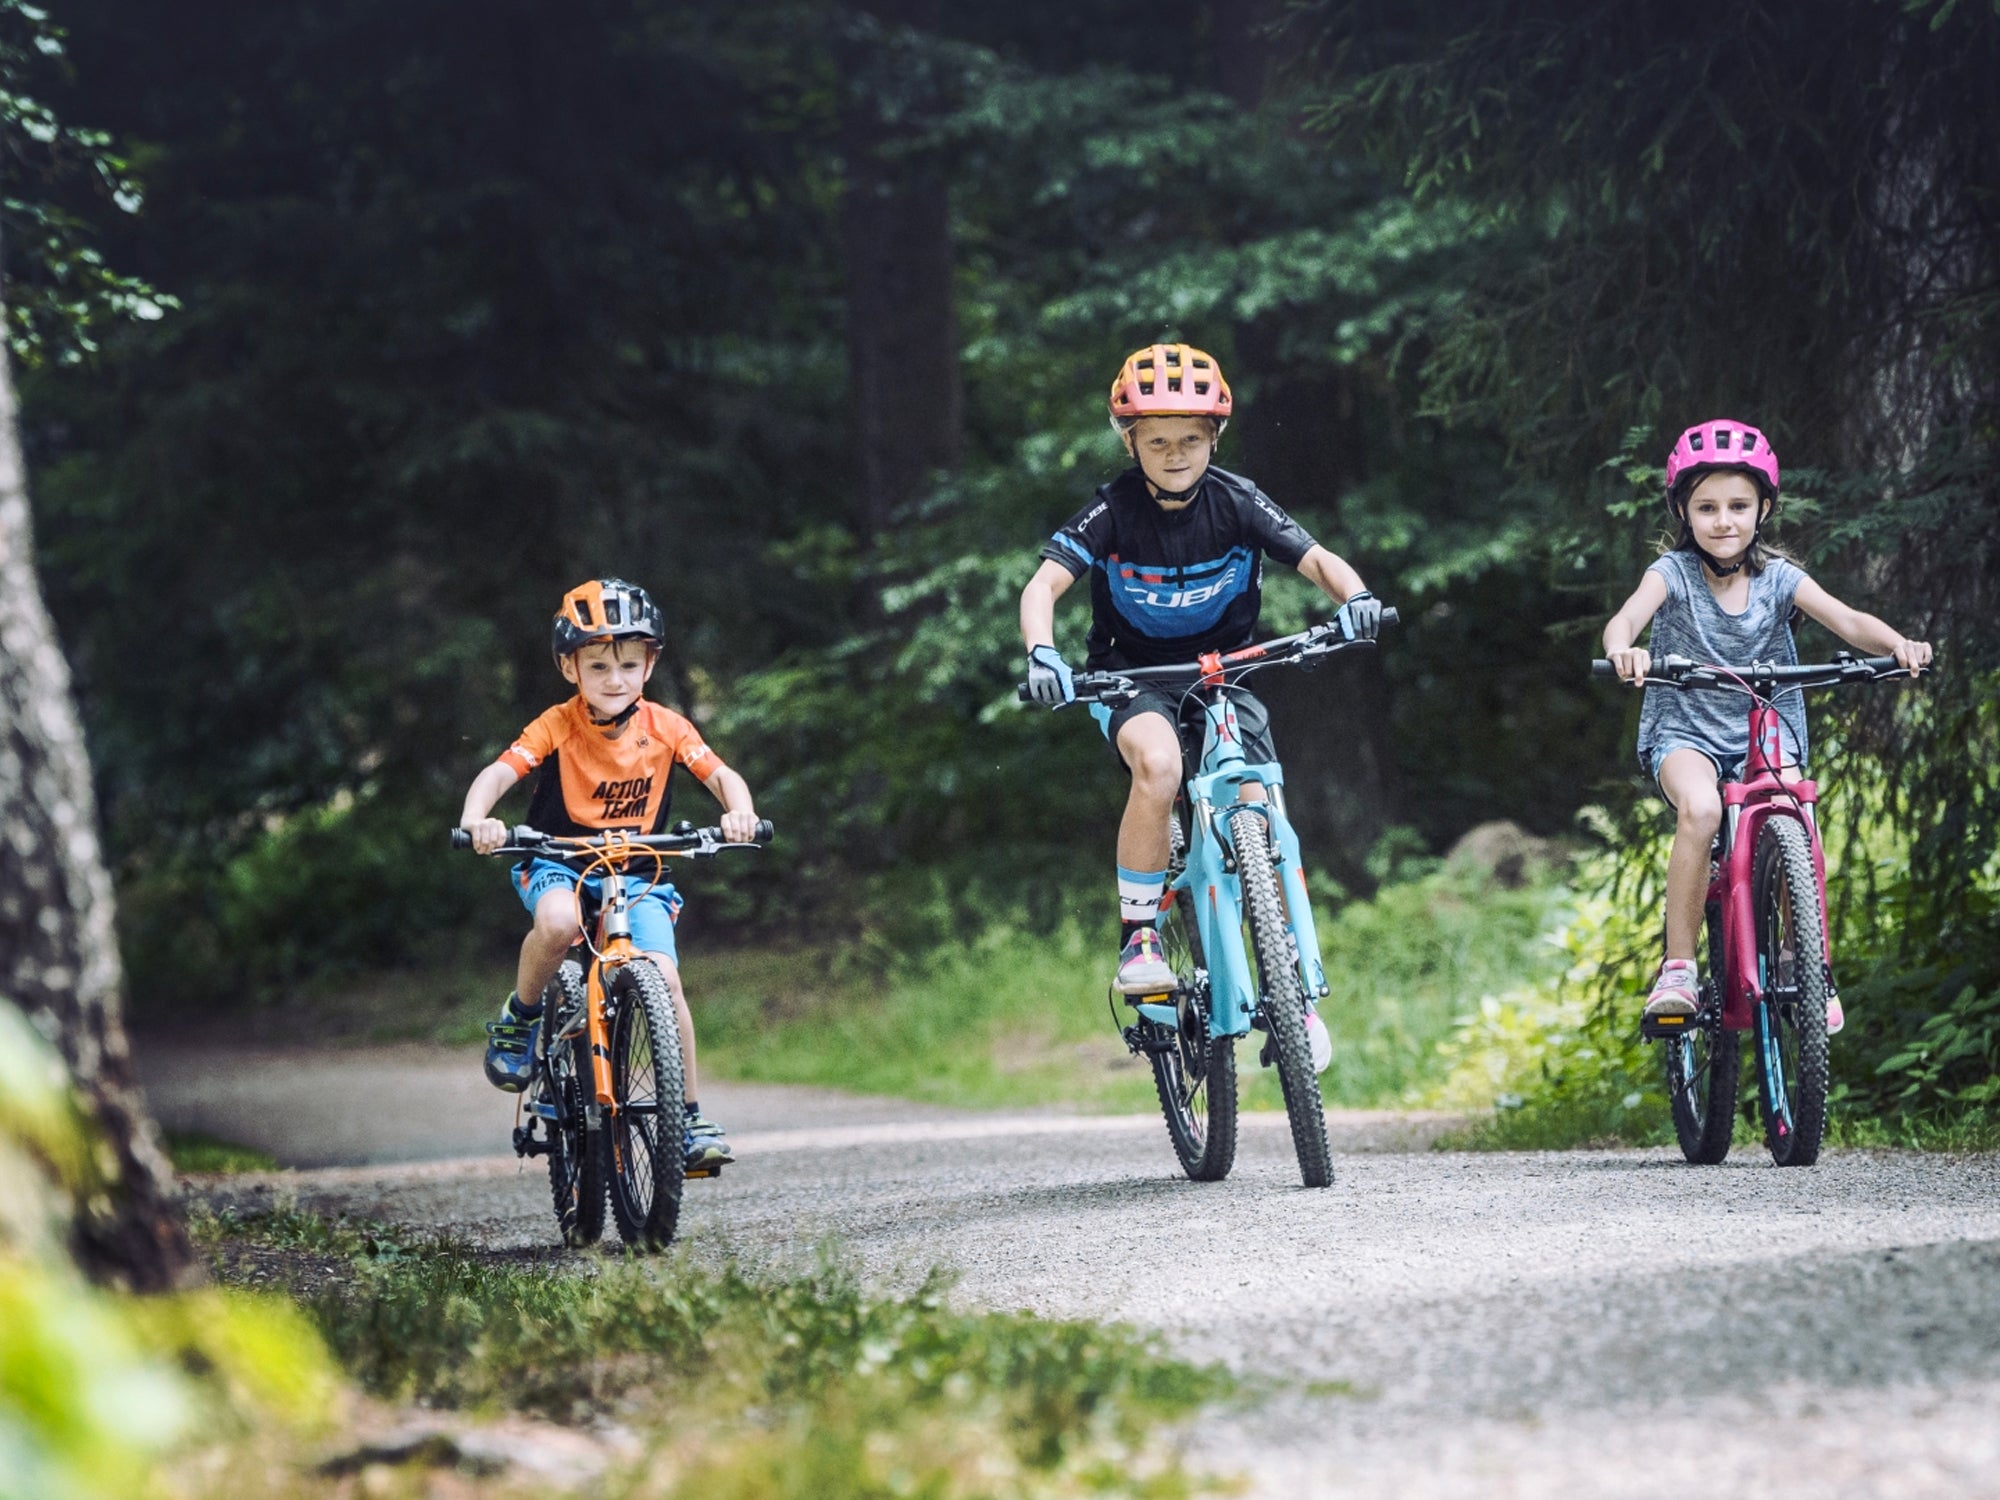 Drei Kinder in sportlicher Kleidung und Fahrradhelmen fahren auf ihren bunten Cube Kinderfahrrädern durch einen Pfad im Wald.